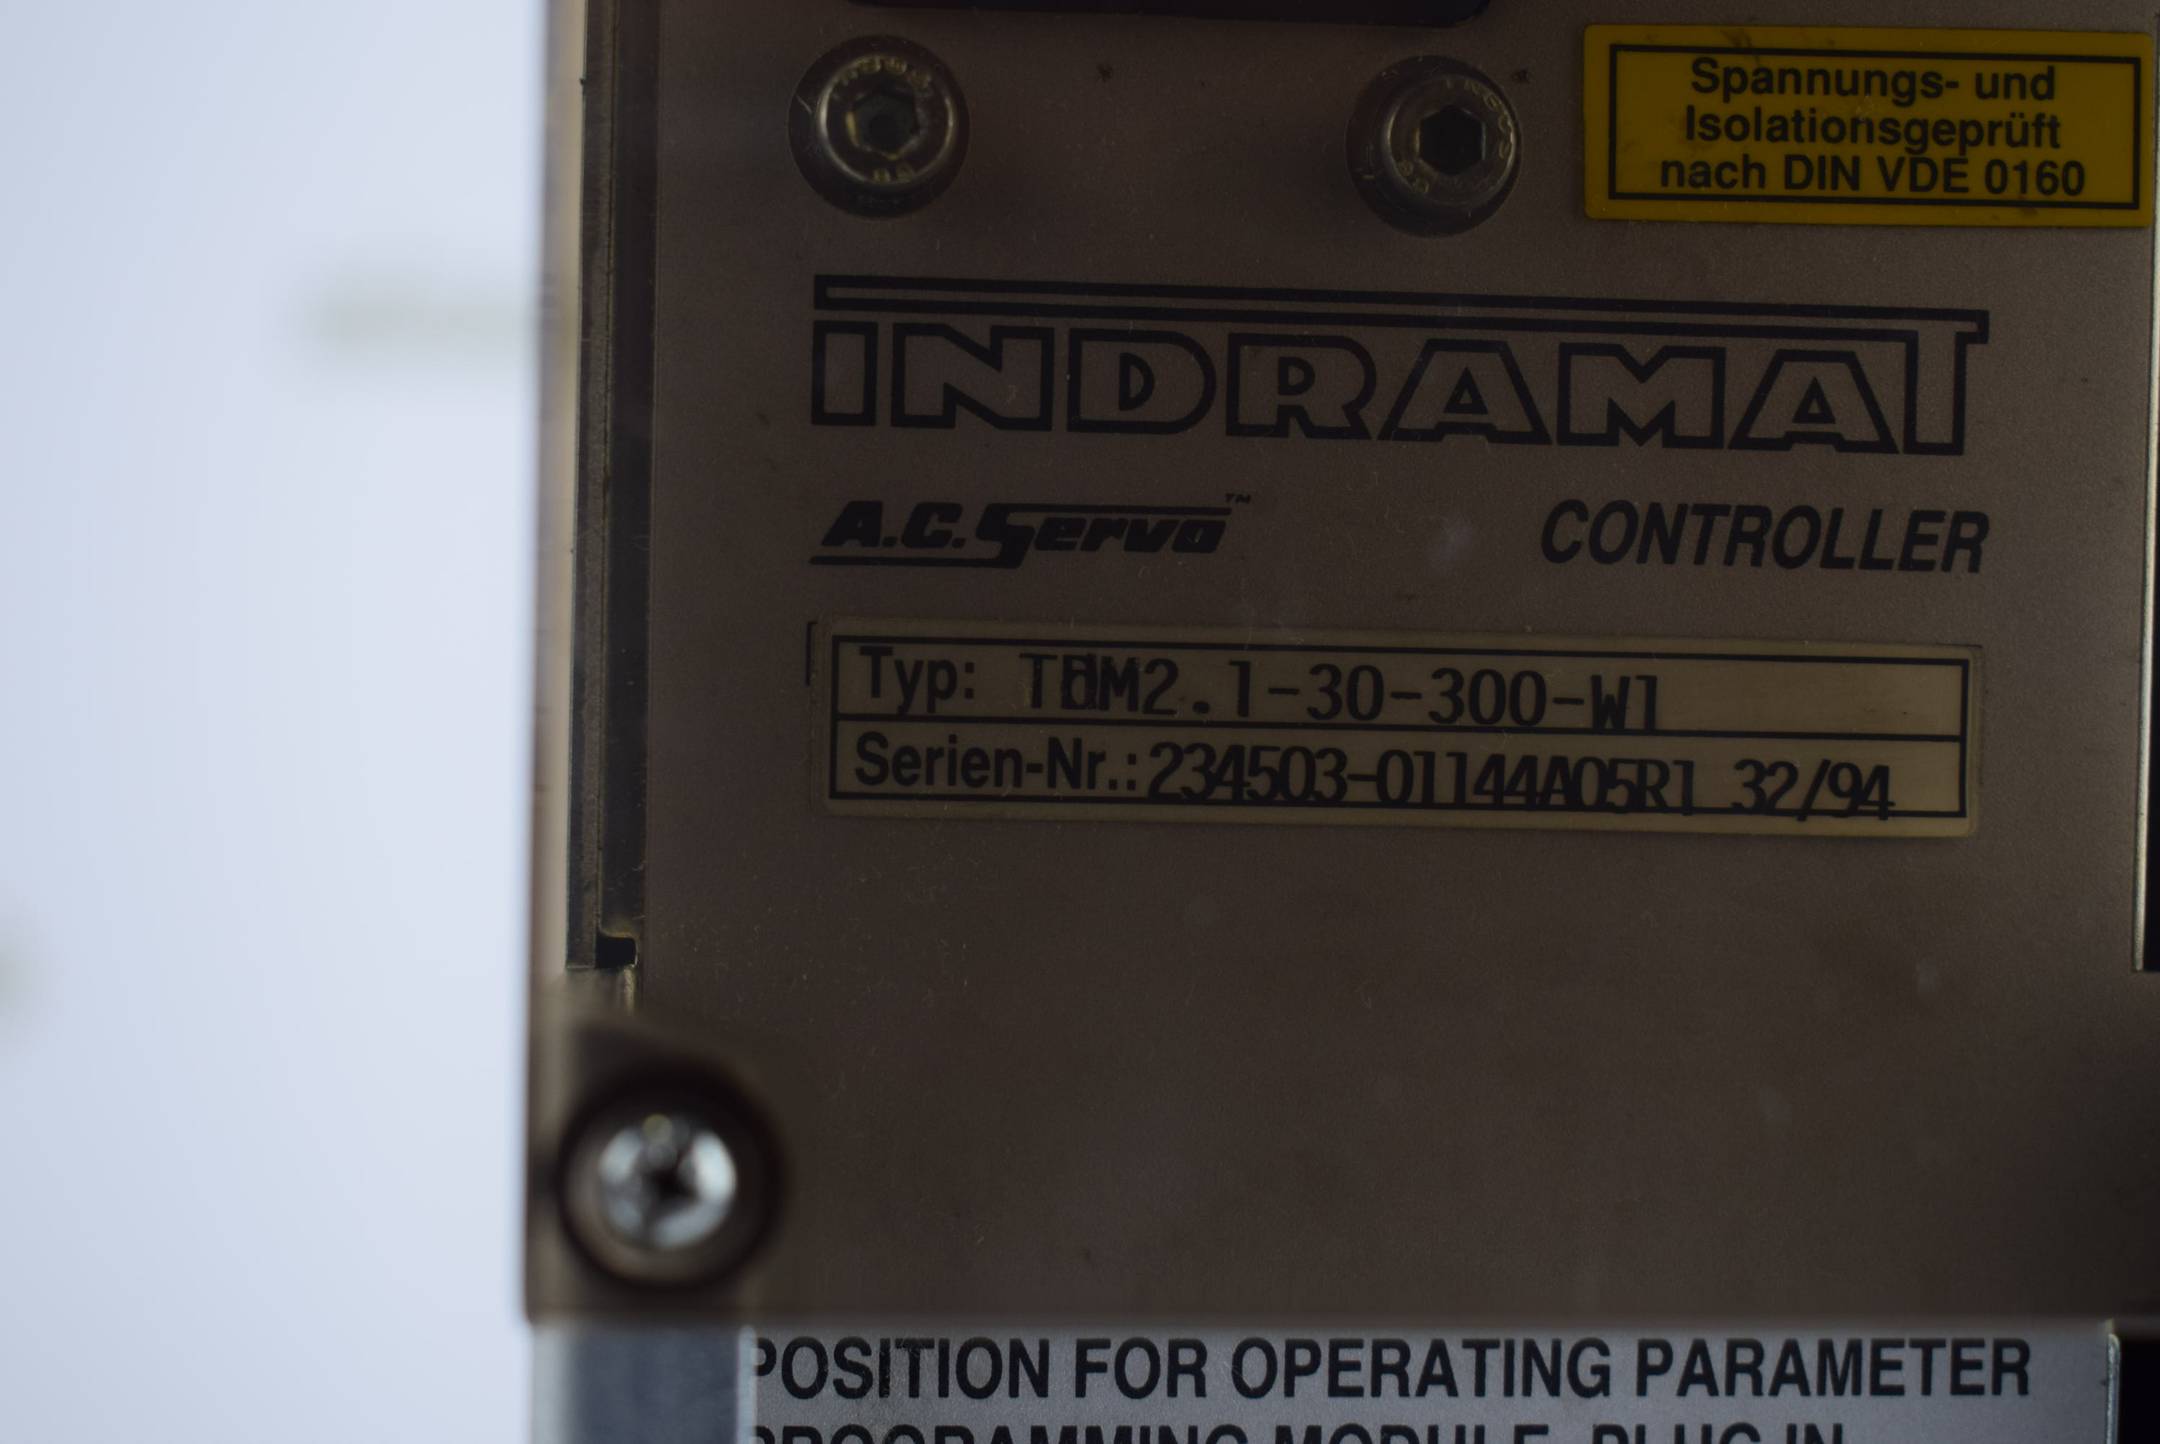 Indramat A.C. Servo Controller TDM 2.1-30-300-W1